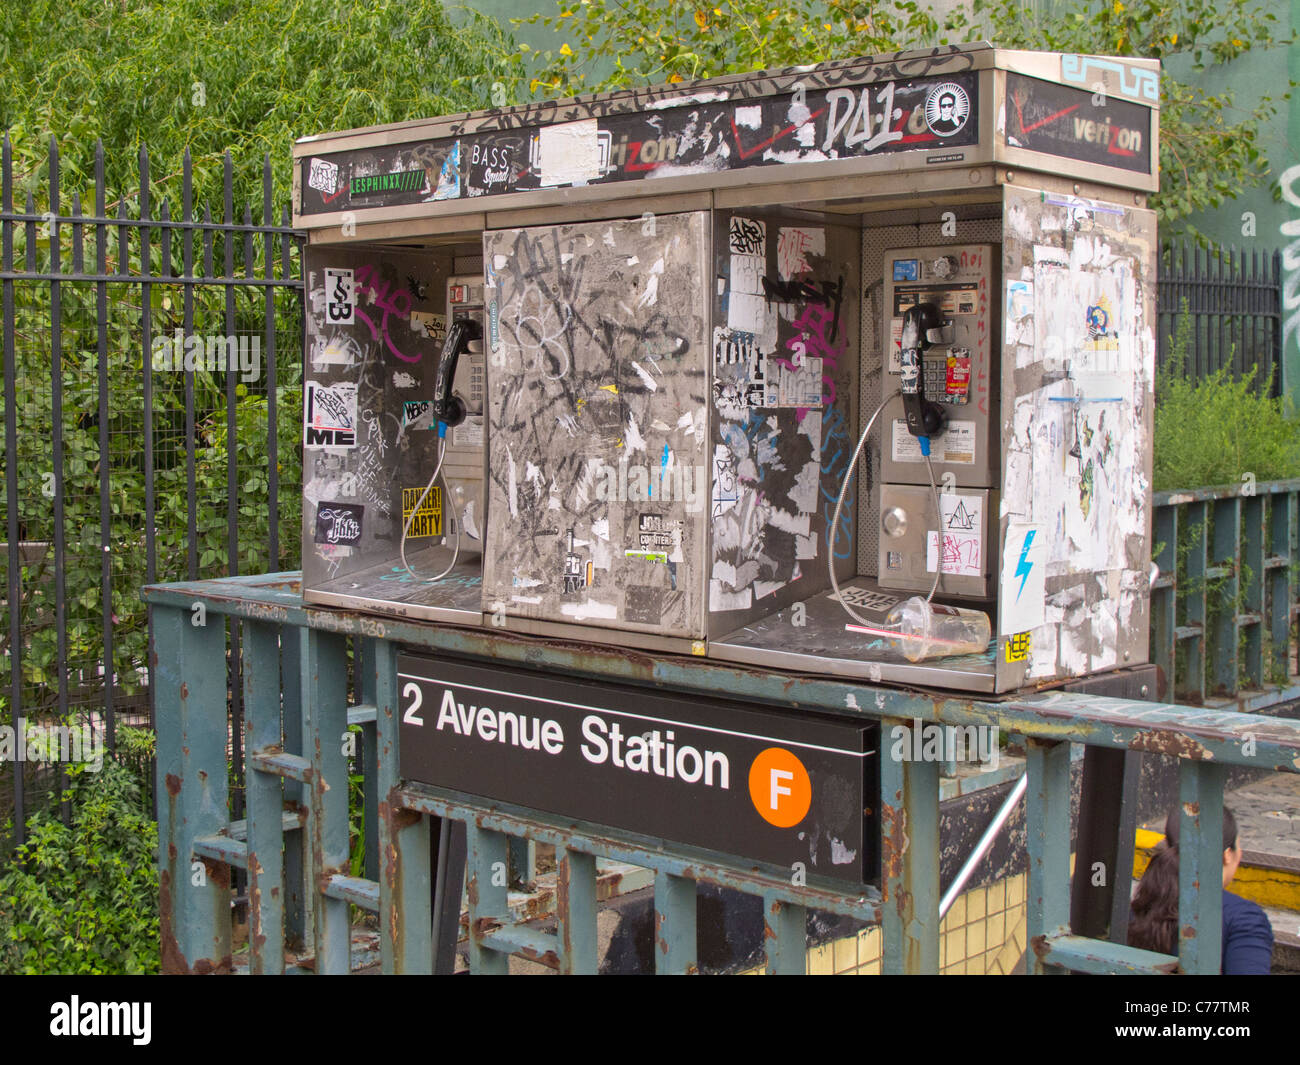 La station de métro de la 2e avenue à New York City graffiti Banque D'Images